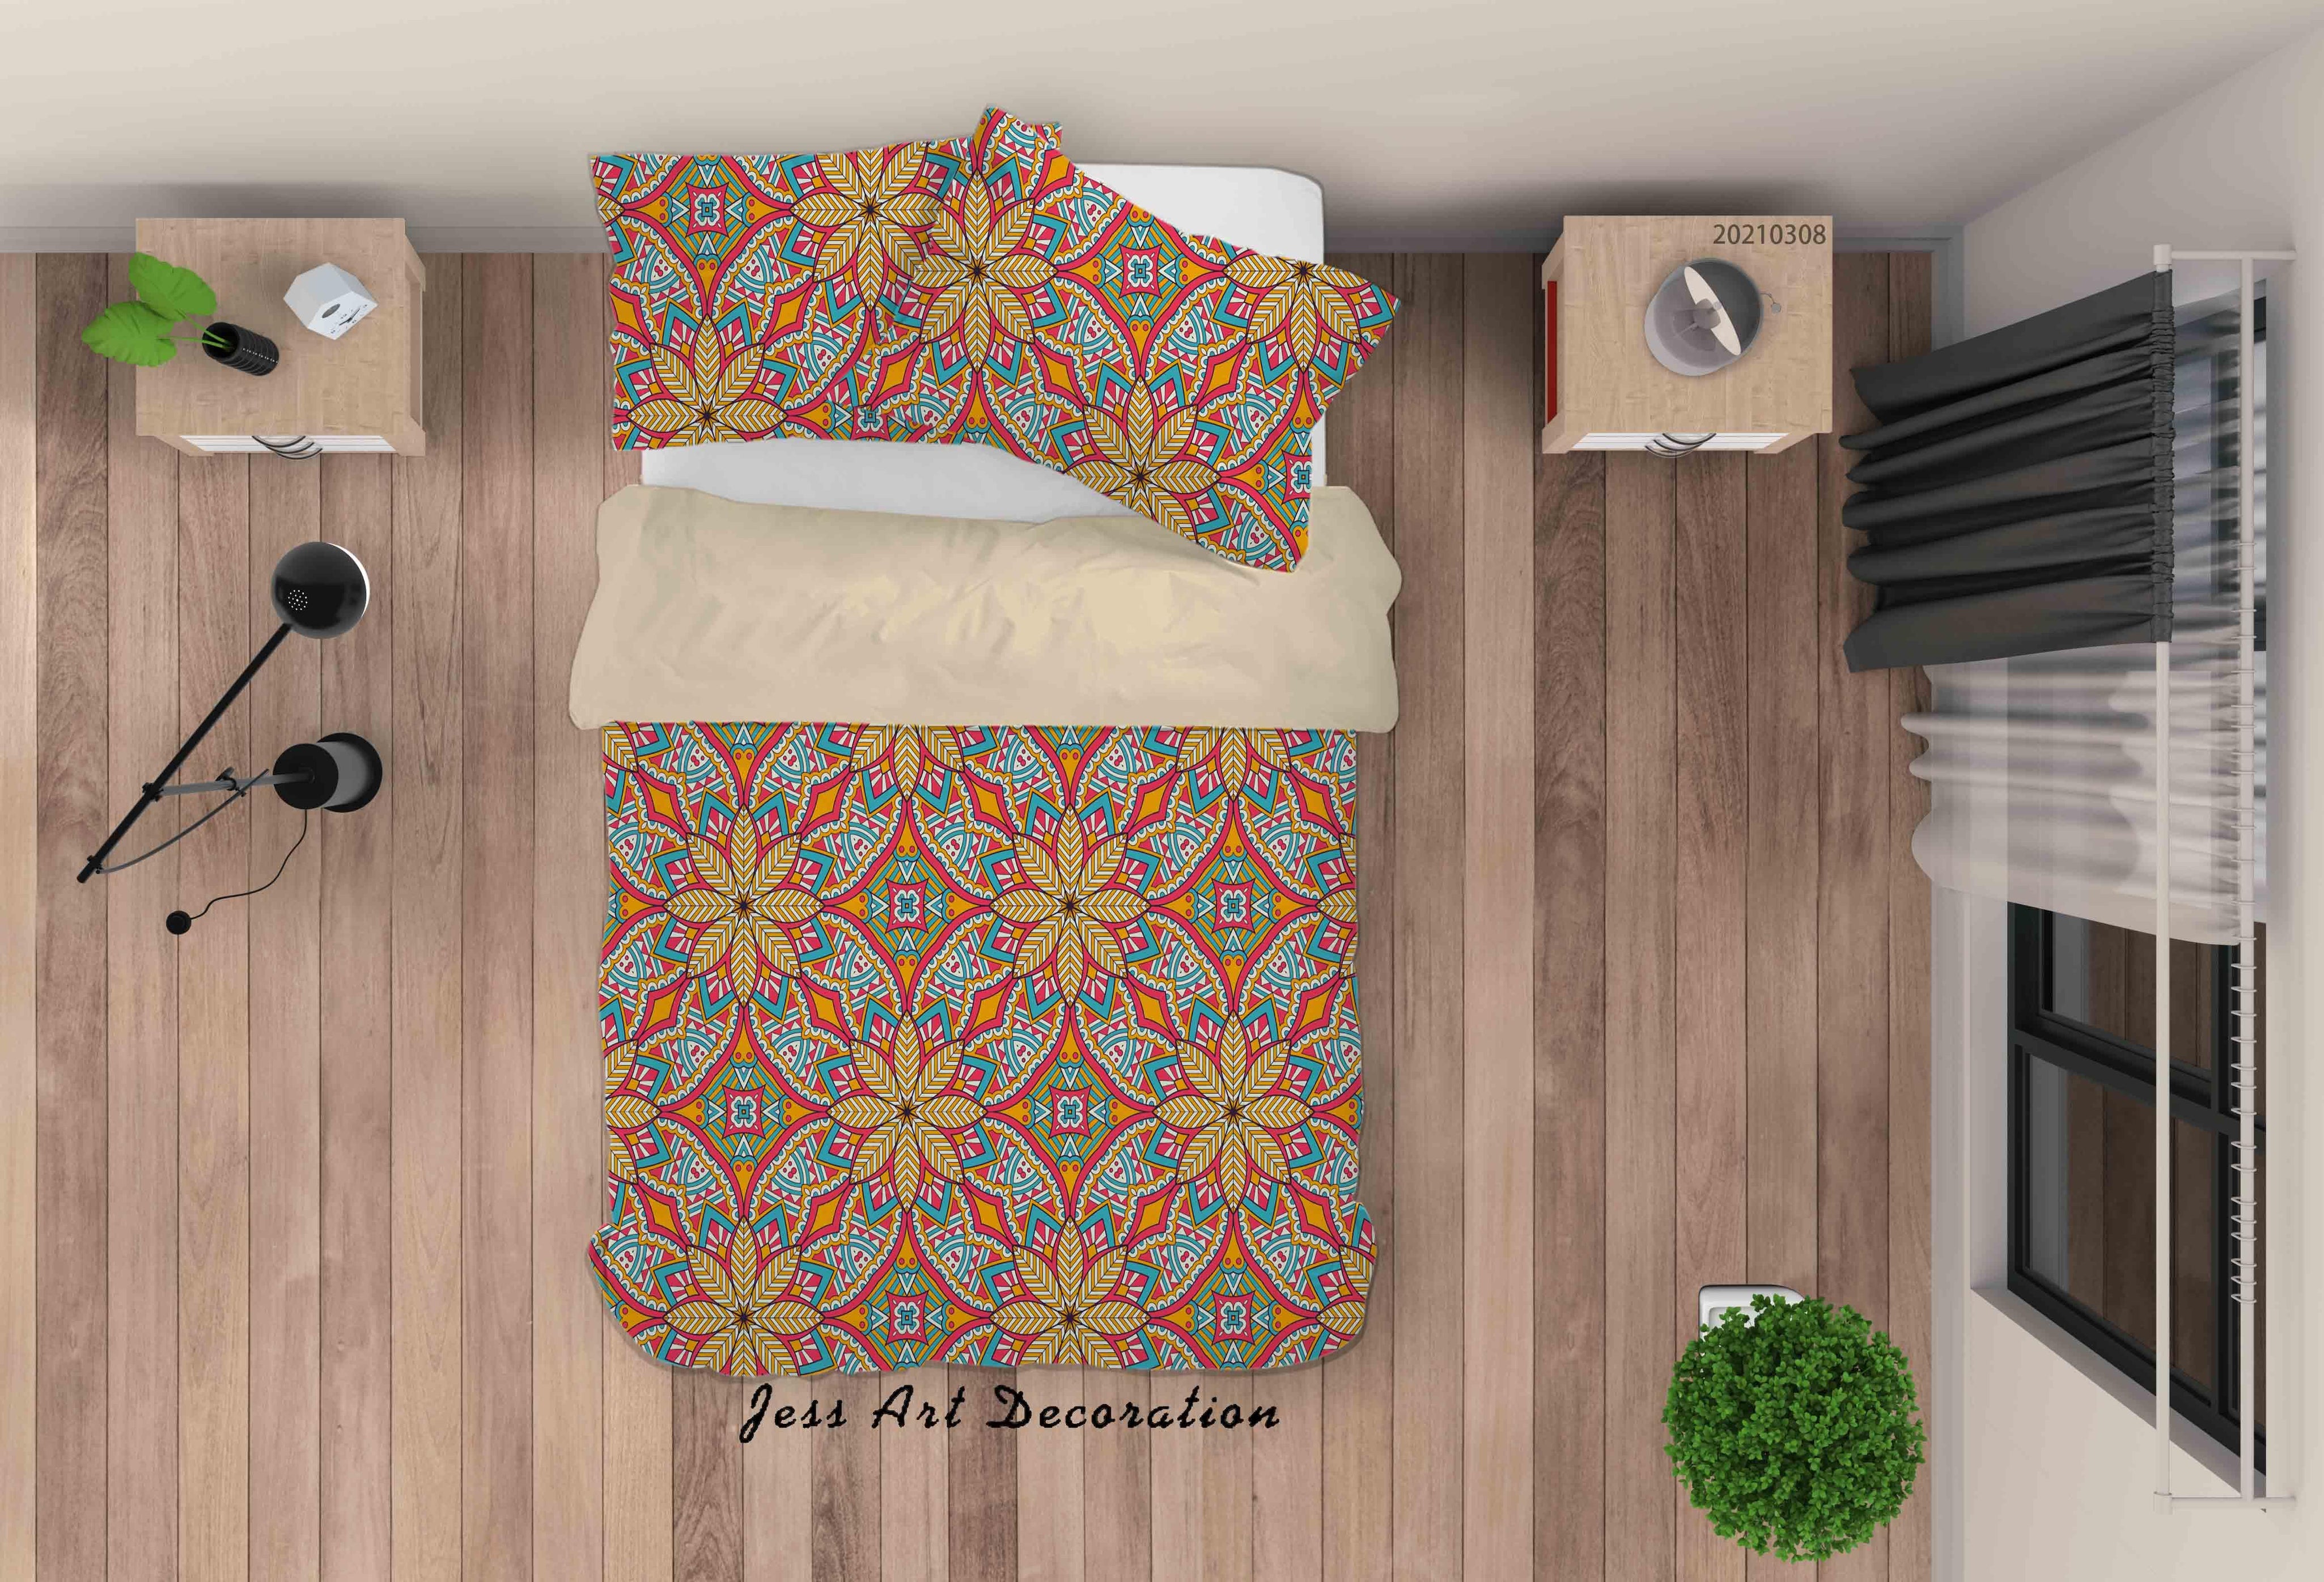 3D Abstract Color Floral Quilt Cover Set Bedding Set Duvet Cover Pillowcases 30- Jess Art Decoration